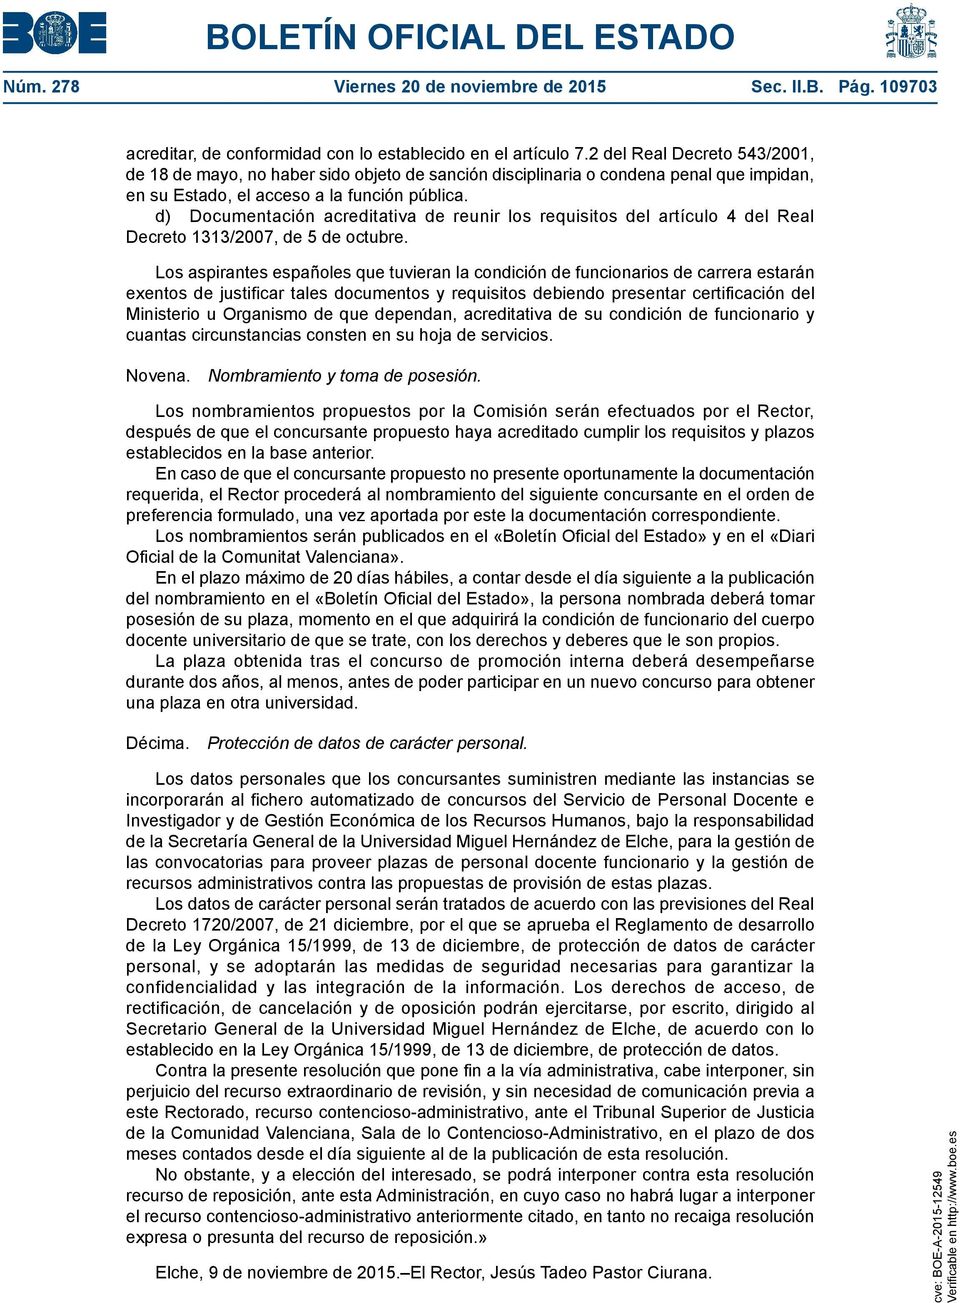 d) Documentación acreditativa de reunir los requisitos del artículo 4 del Real Decreto 1313/2007, de 5 de octubre.